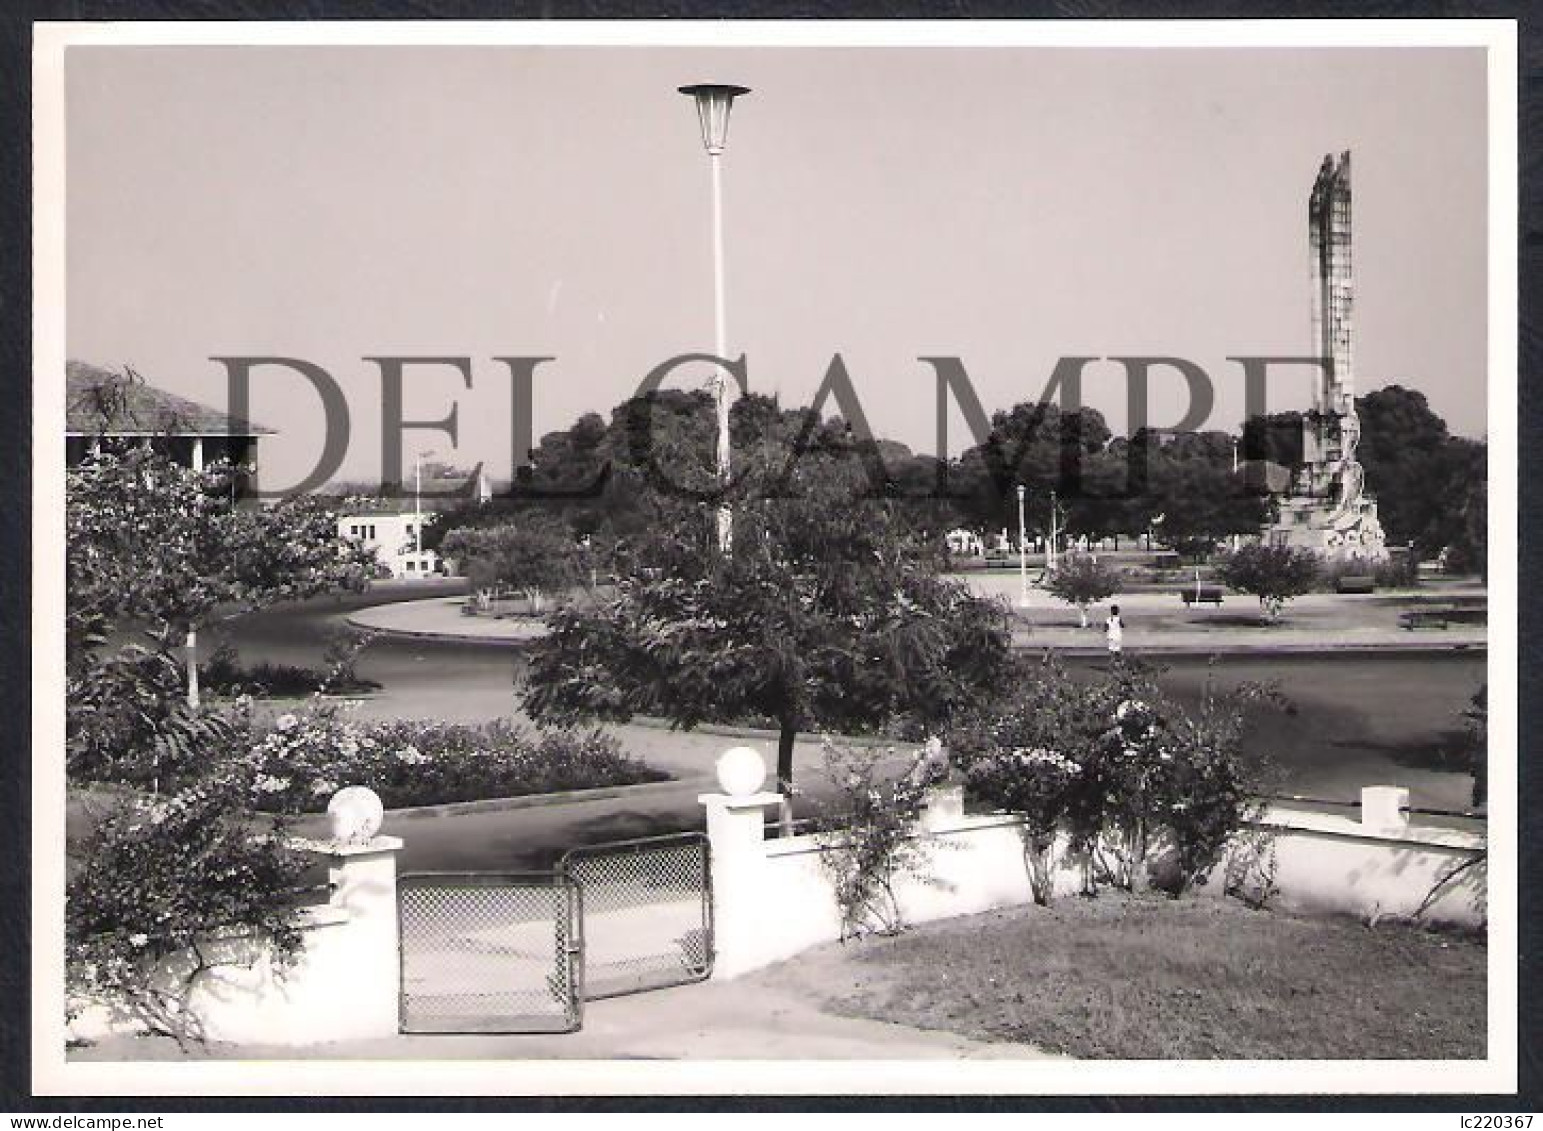 LOT W/23 REAL PHOTOS PORTUGAL GUINÉ GUINEA - DIVERSAS VISTAS DA CIDADE DE BOLAMA E DE DIVERSAS ACTIVIDADES - 1960'S - Afrique